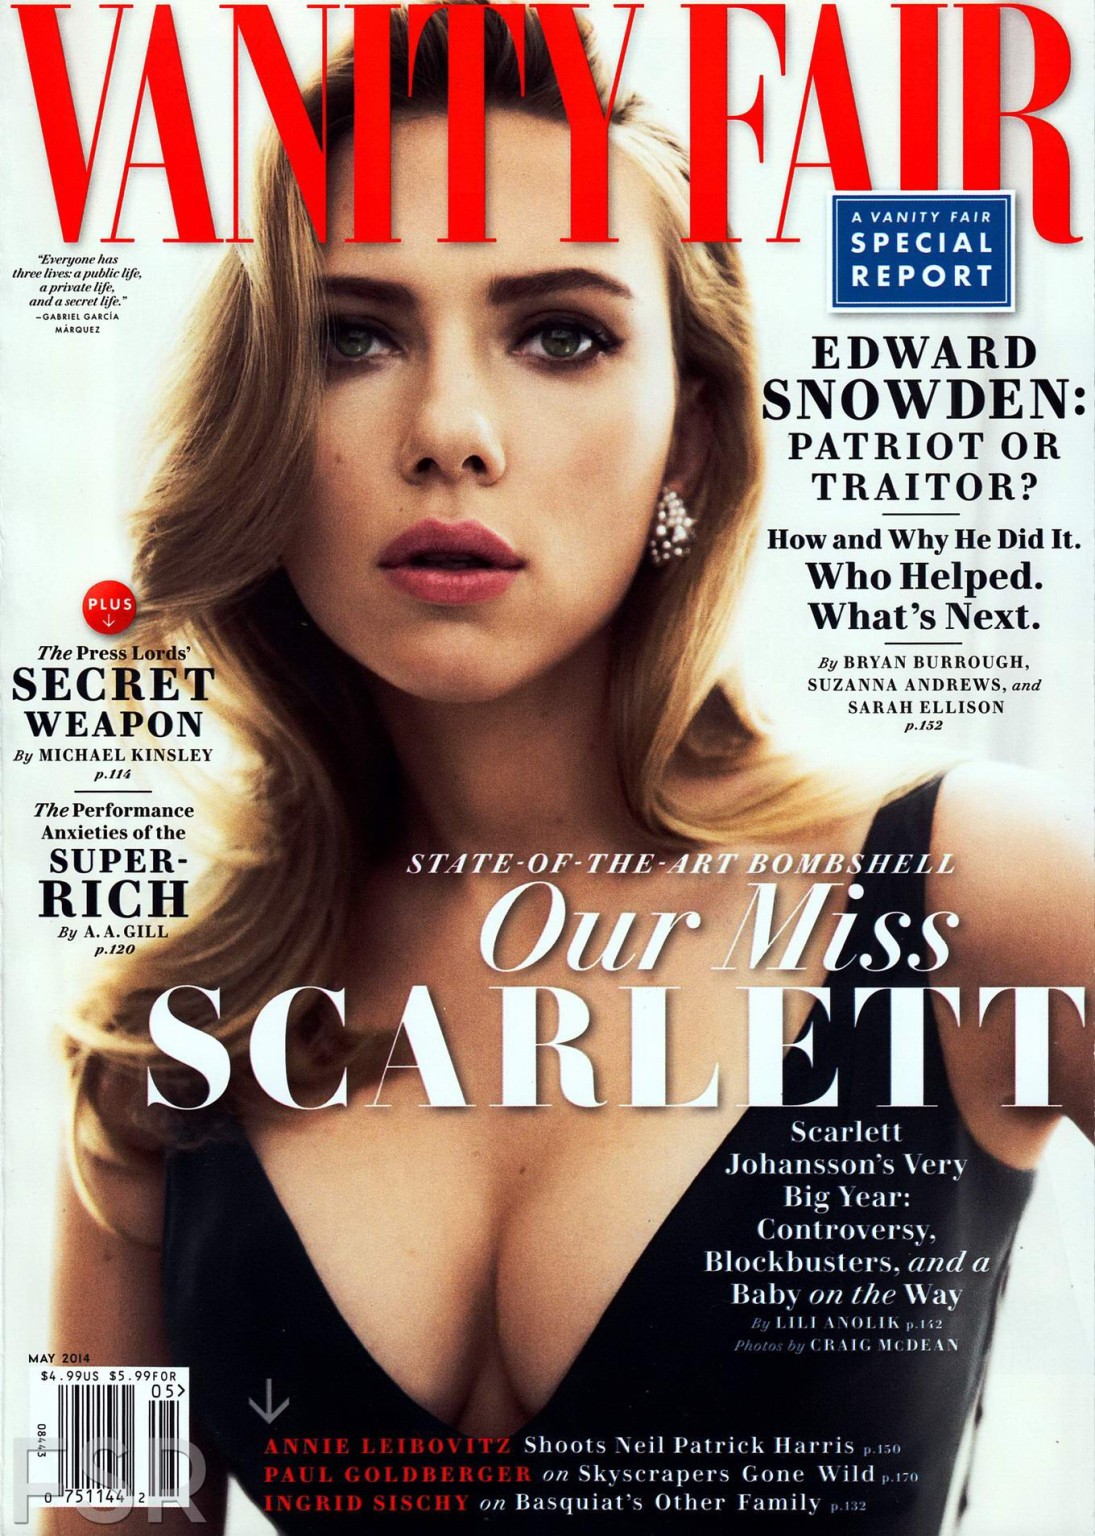 Scarlett Johansson showing huge cleavage in Vanity Fair photoshoot #75188849